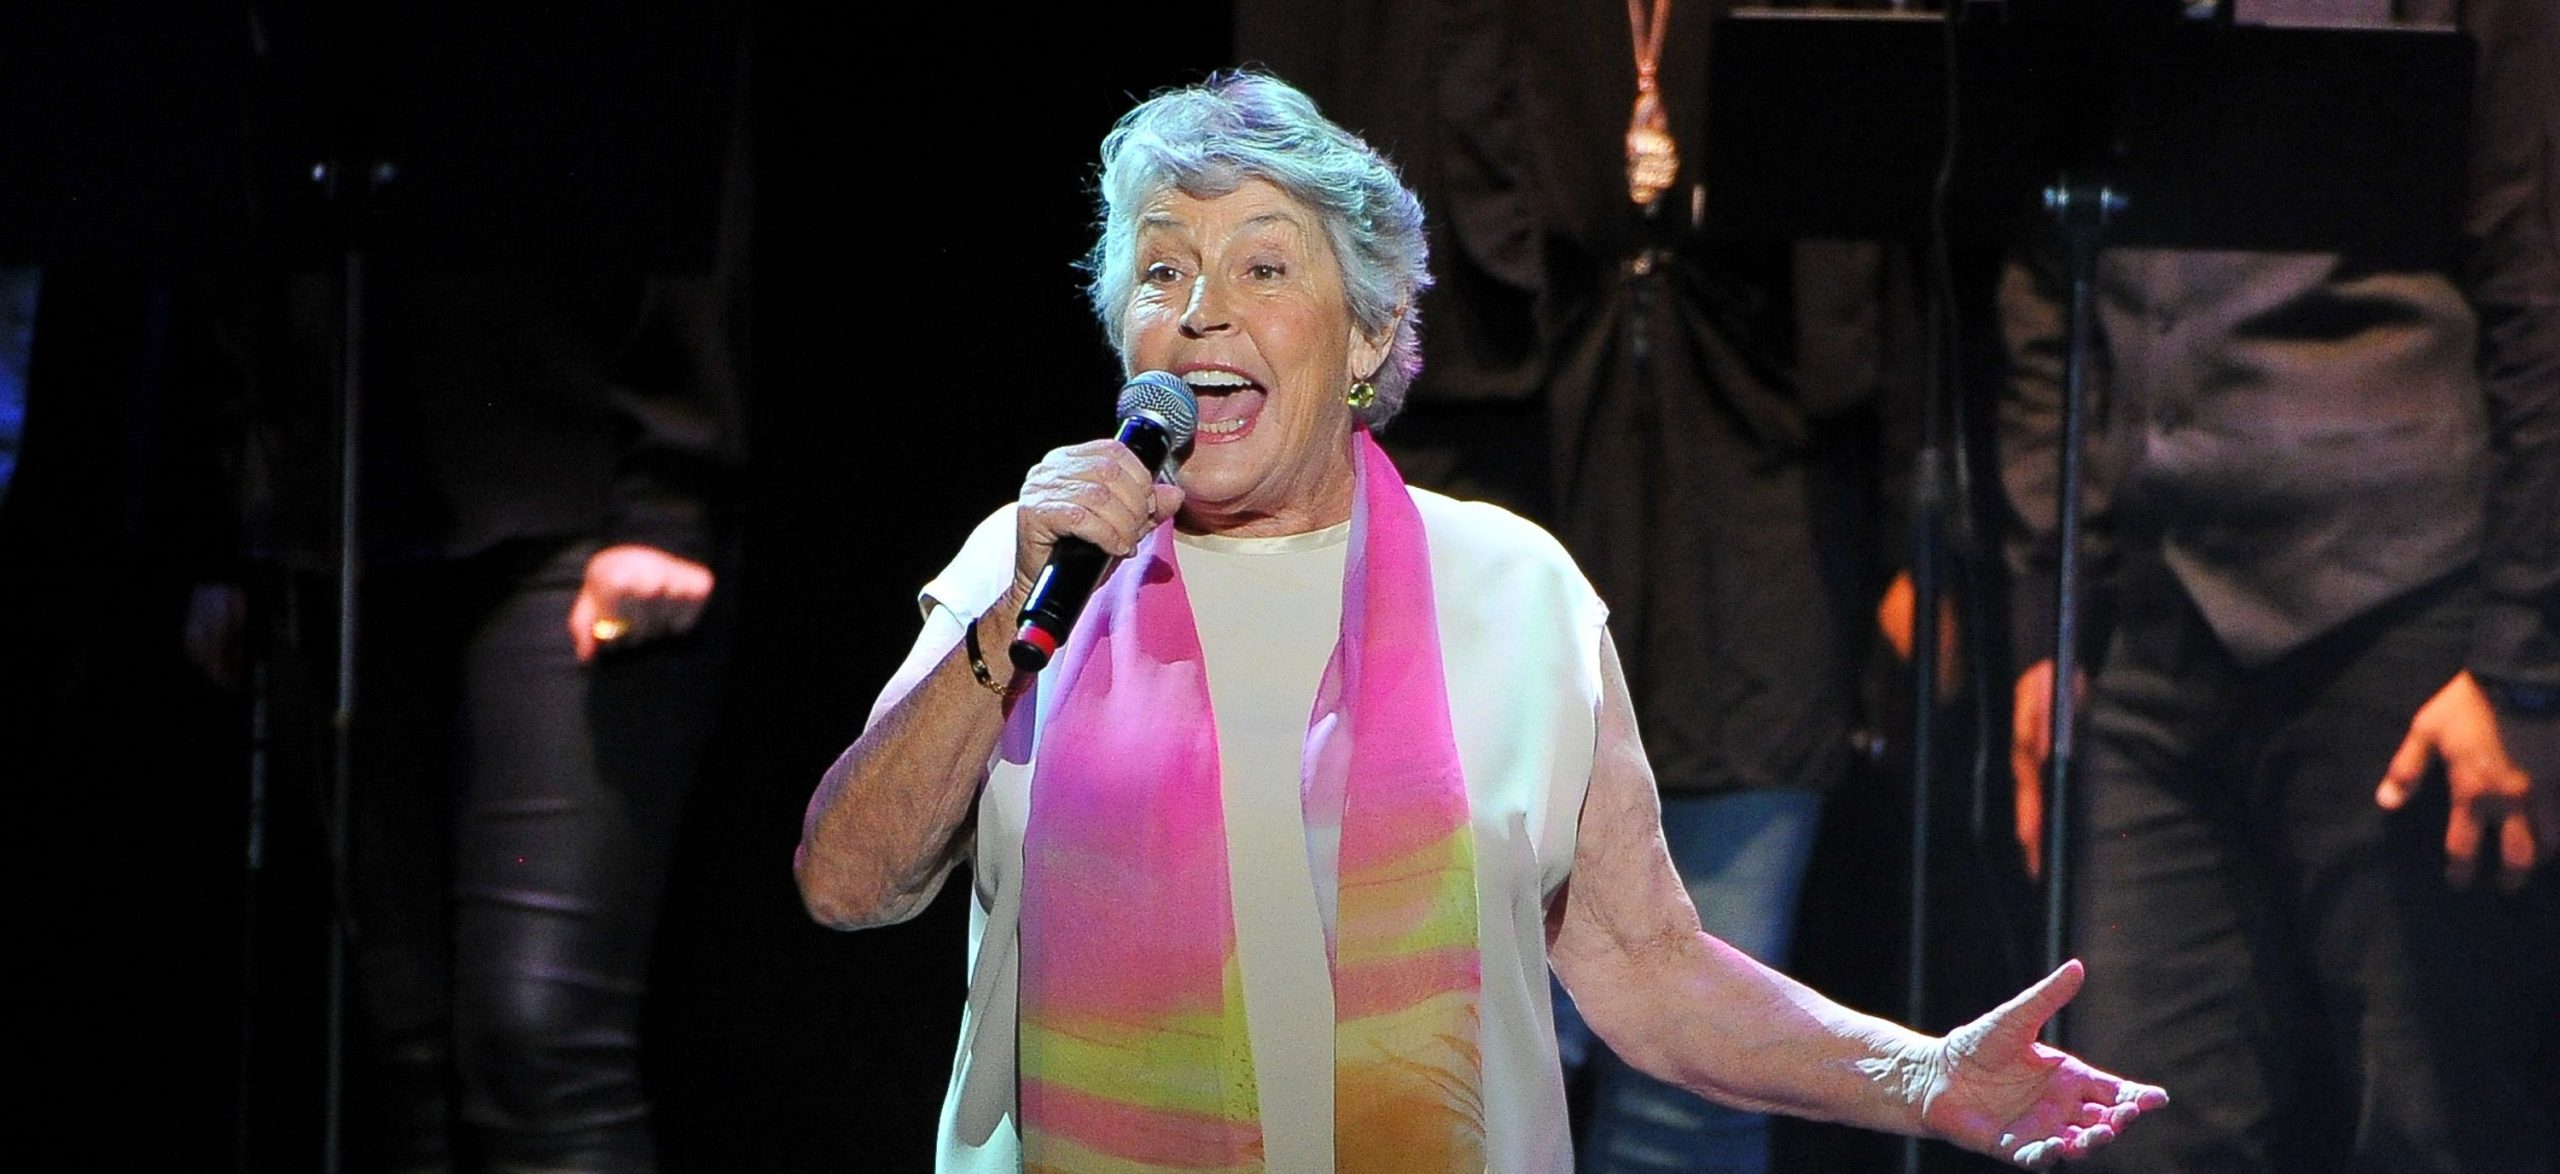 Πέθανε η τραγουδίστρια Helen Reddy σε ηλικία 78 ετών (φωτό)